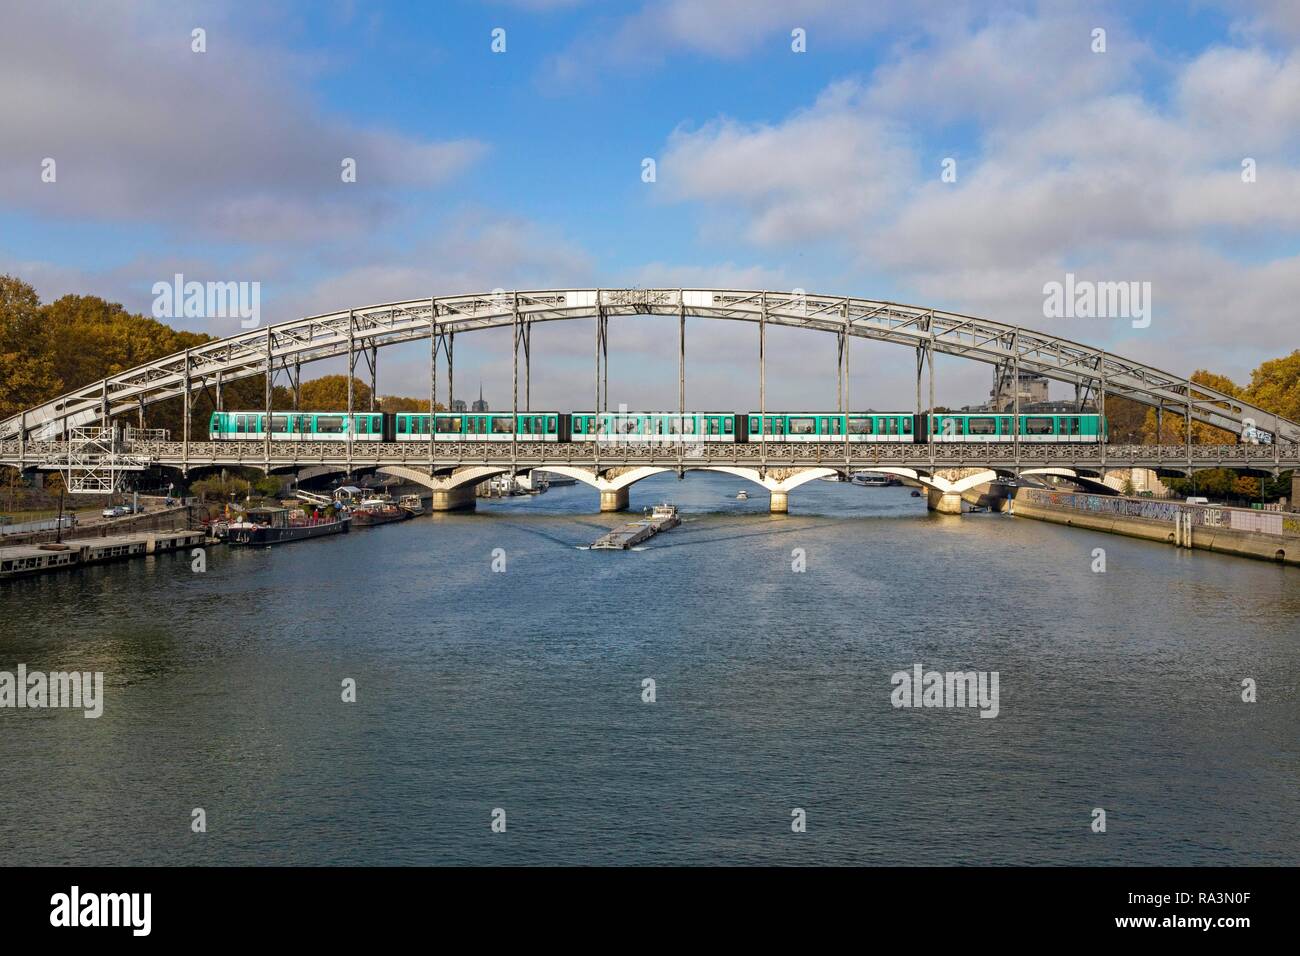 La metropolitana attraversa la Senna sul ponte in acciaio, Pont d'Austerlitz, Parigi, Francia Foto Stock